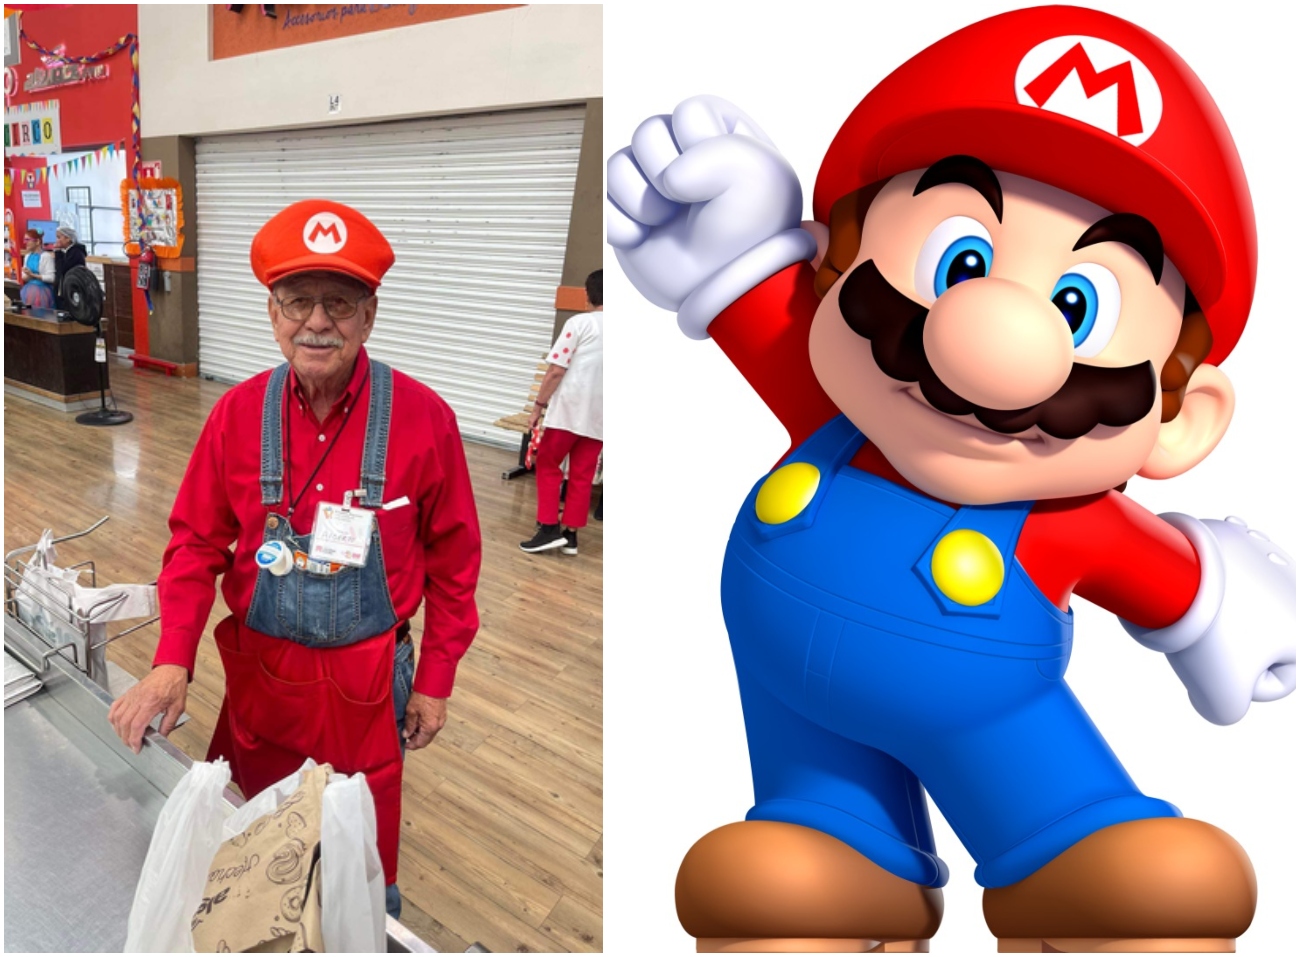 Abuelito sorprende con disfraz de Mario Bros en el Día del Niño - Tikitakas